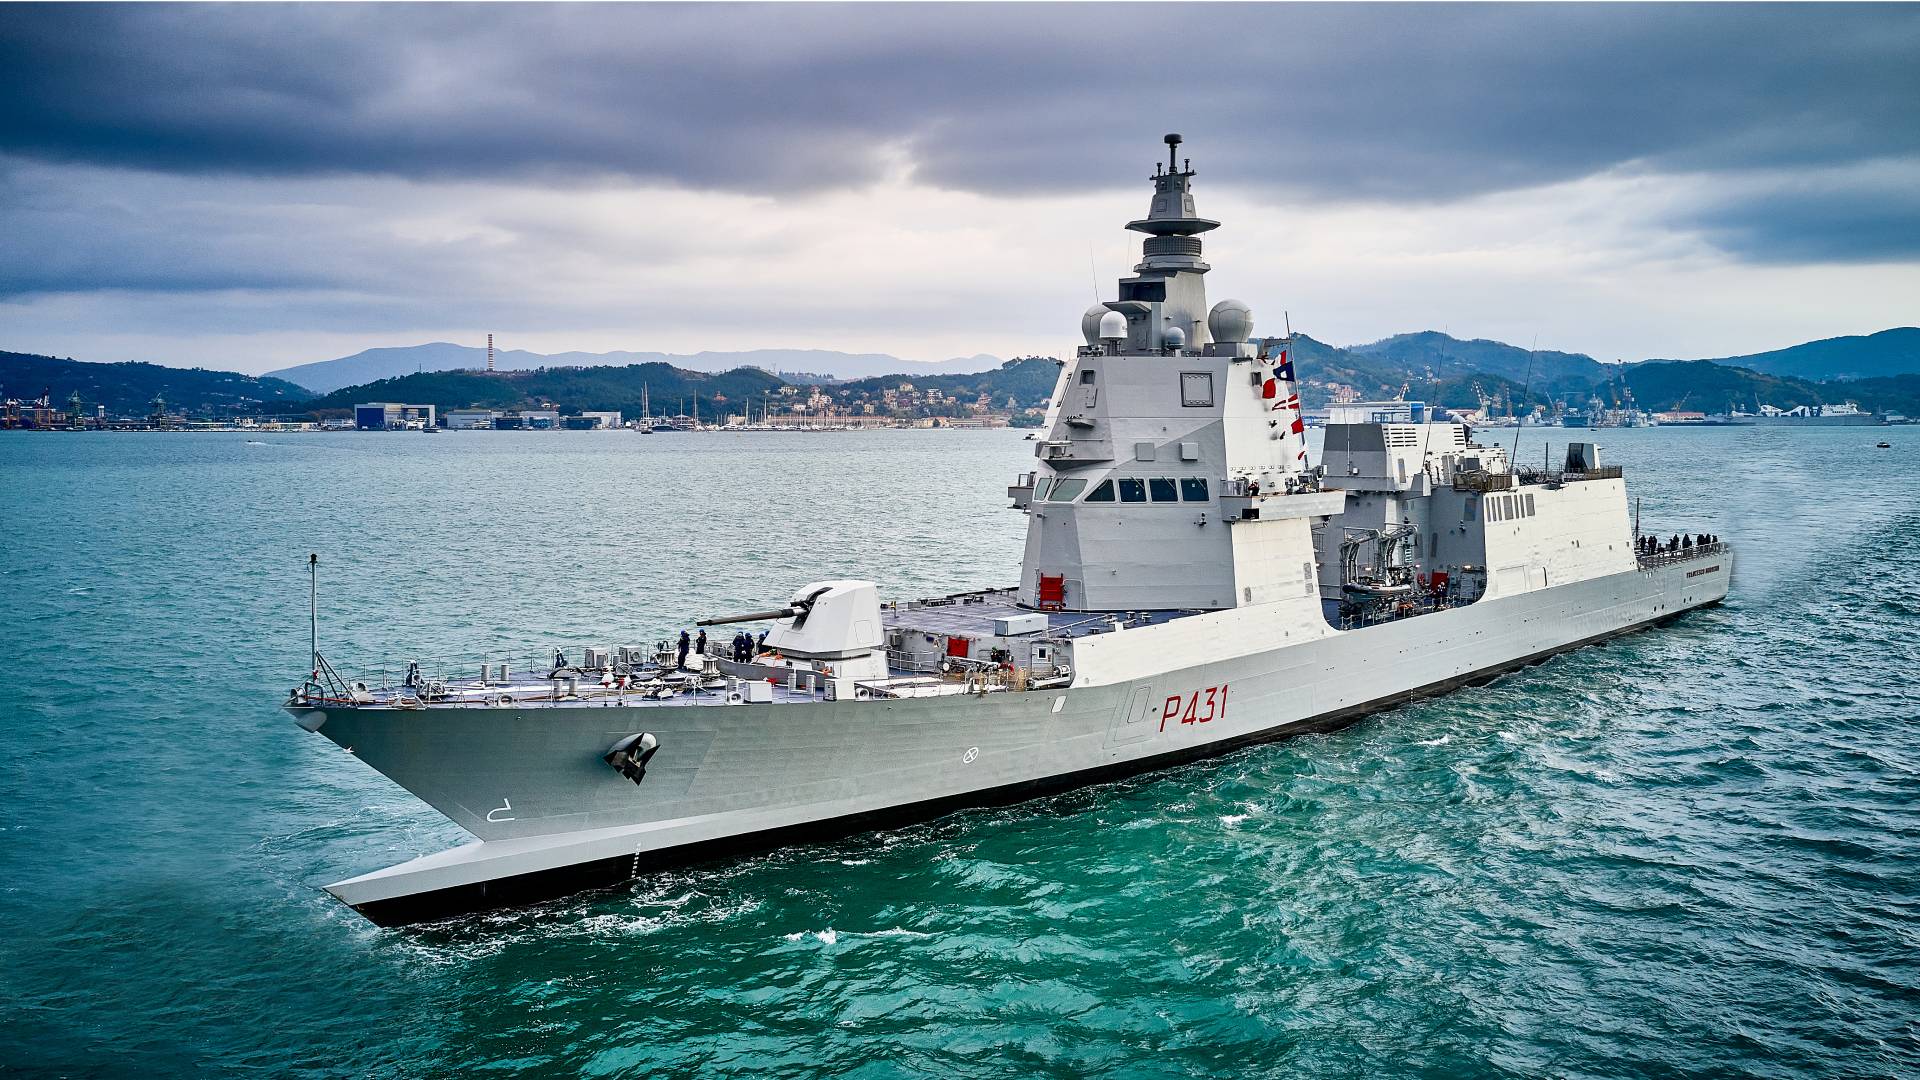 Italian Navy’s unprecedented commitment beyond Mare Nostrum - Decode39